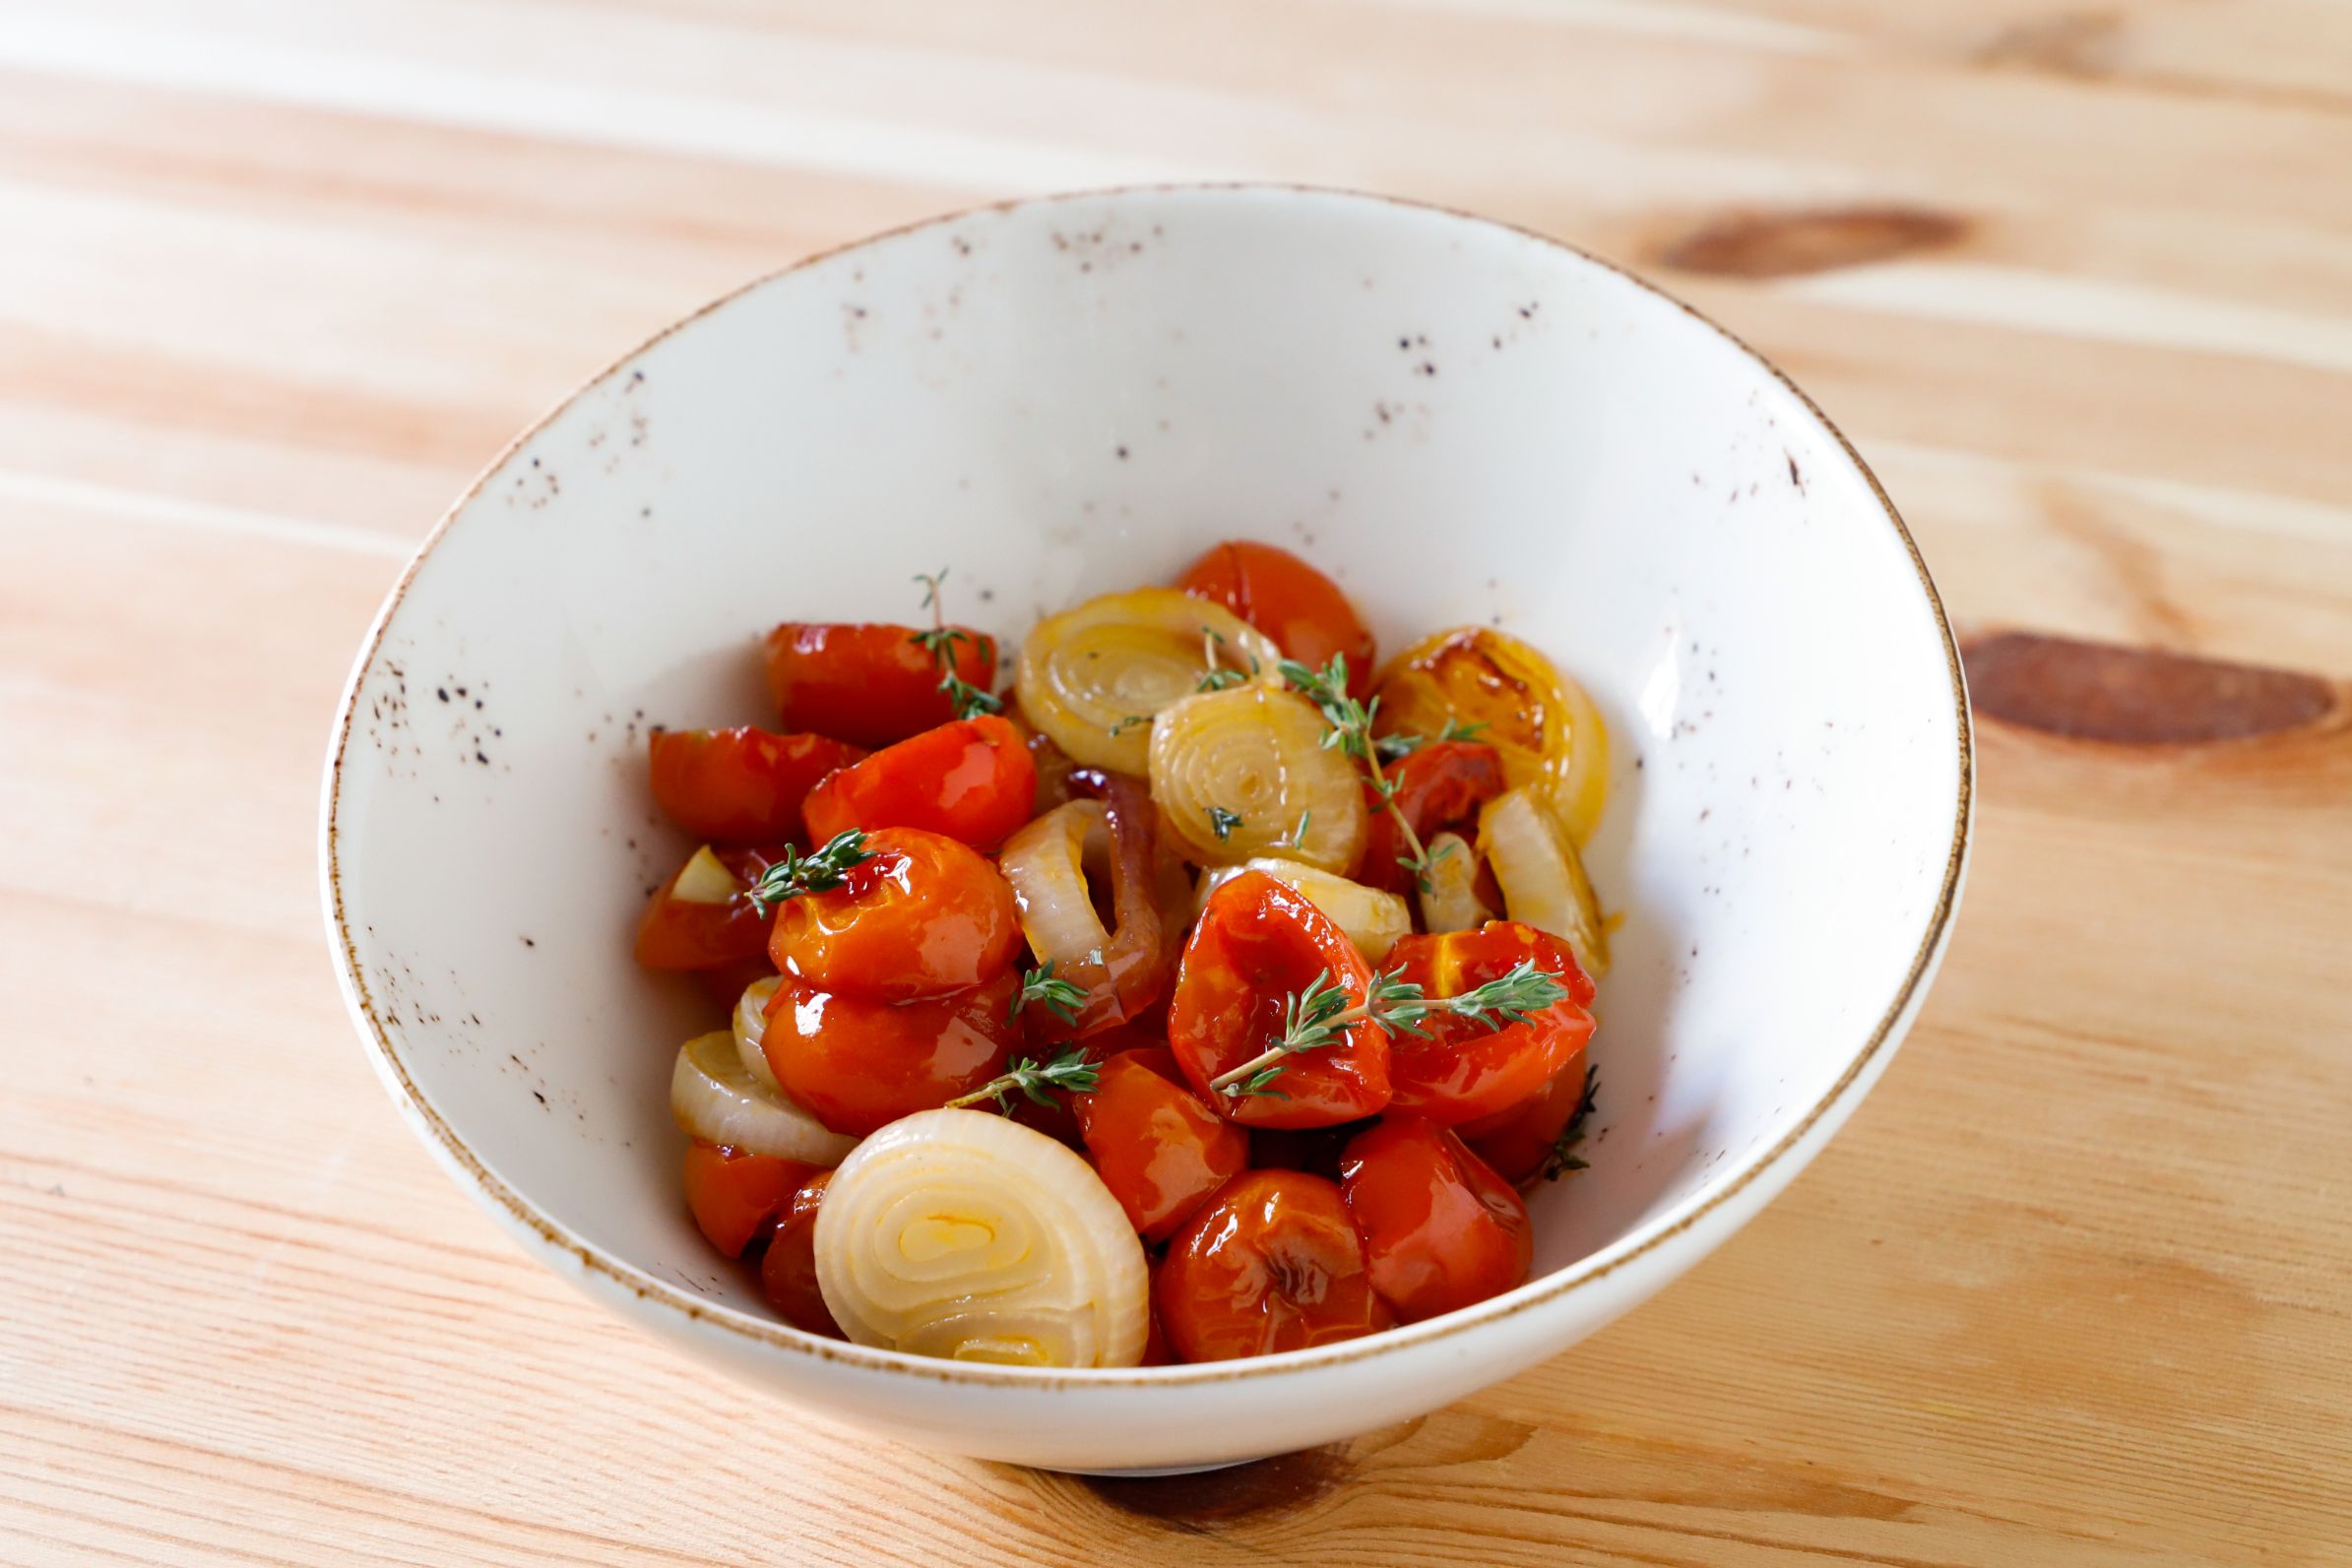 Pomodori e cipolle confit in padella: il contorno giusto per la tua estate  | Conad